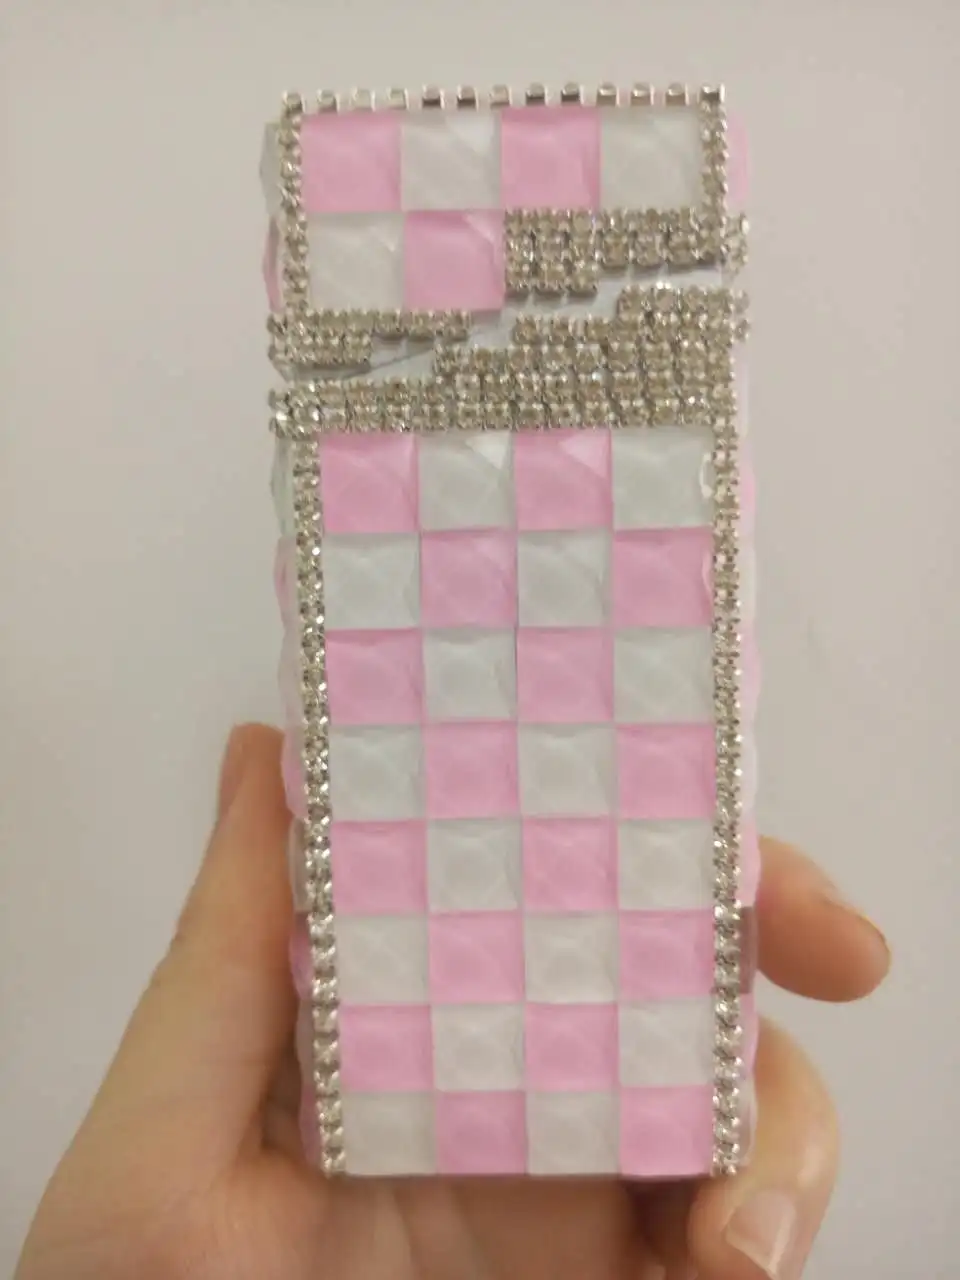 Алмазный портсигар, Andmade портсигар моды леди, розовый портсигар для молодых дам милый портсигар - Цвет: PINK AND WHITE